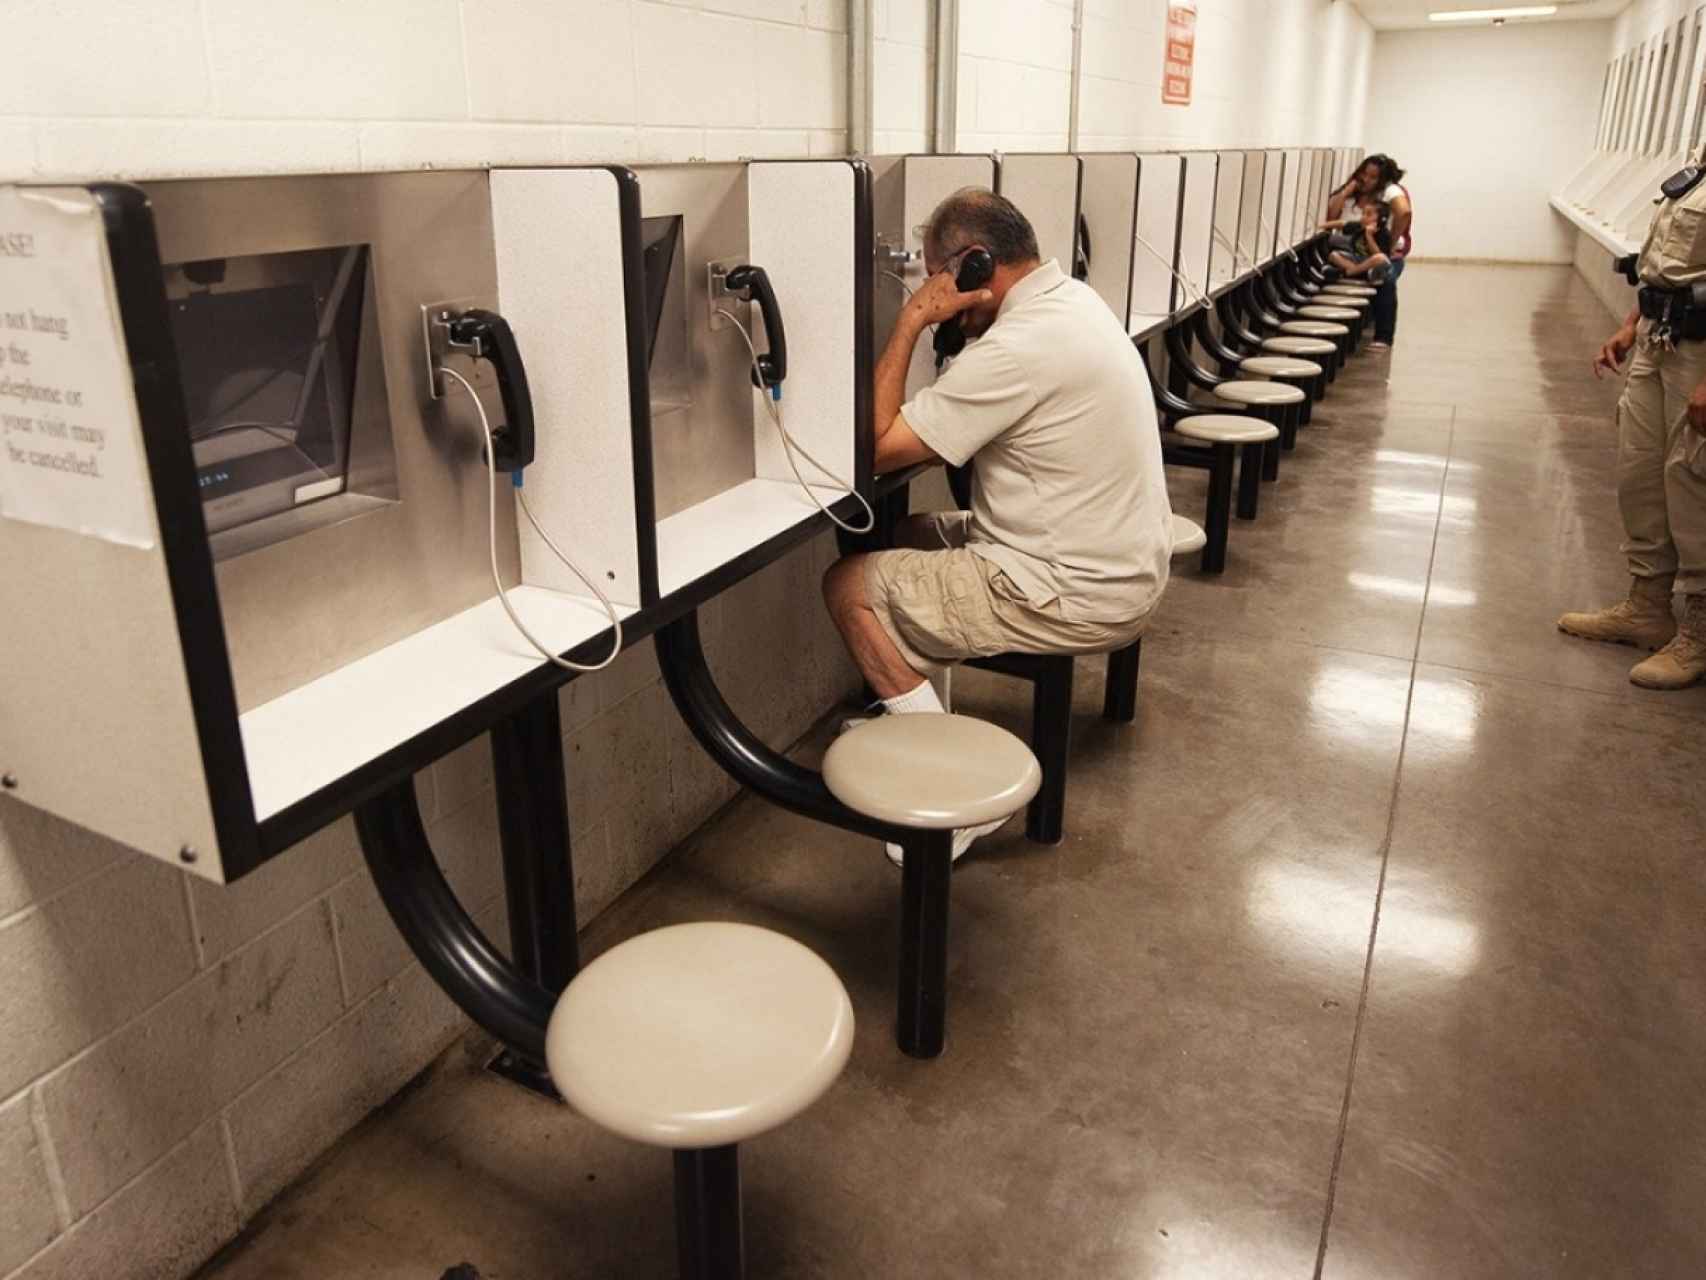 Sala de comunicación de reclusos en una cárcel de EEUU